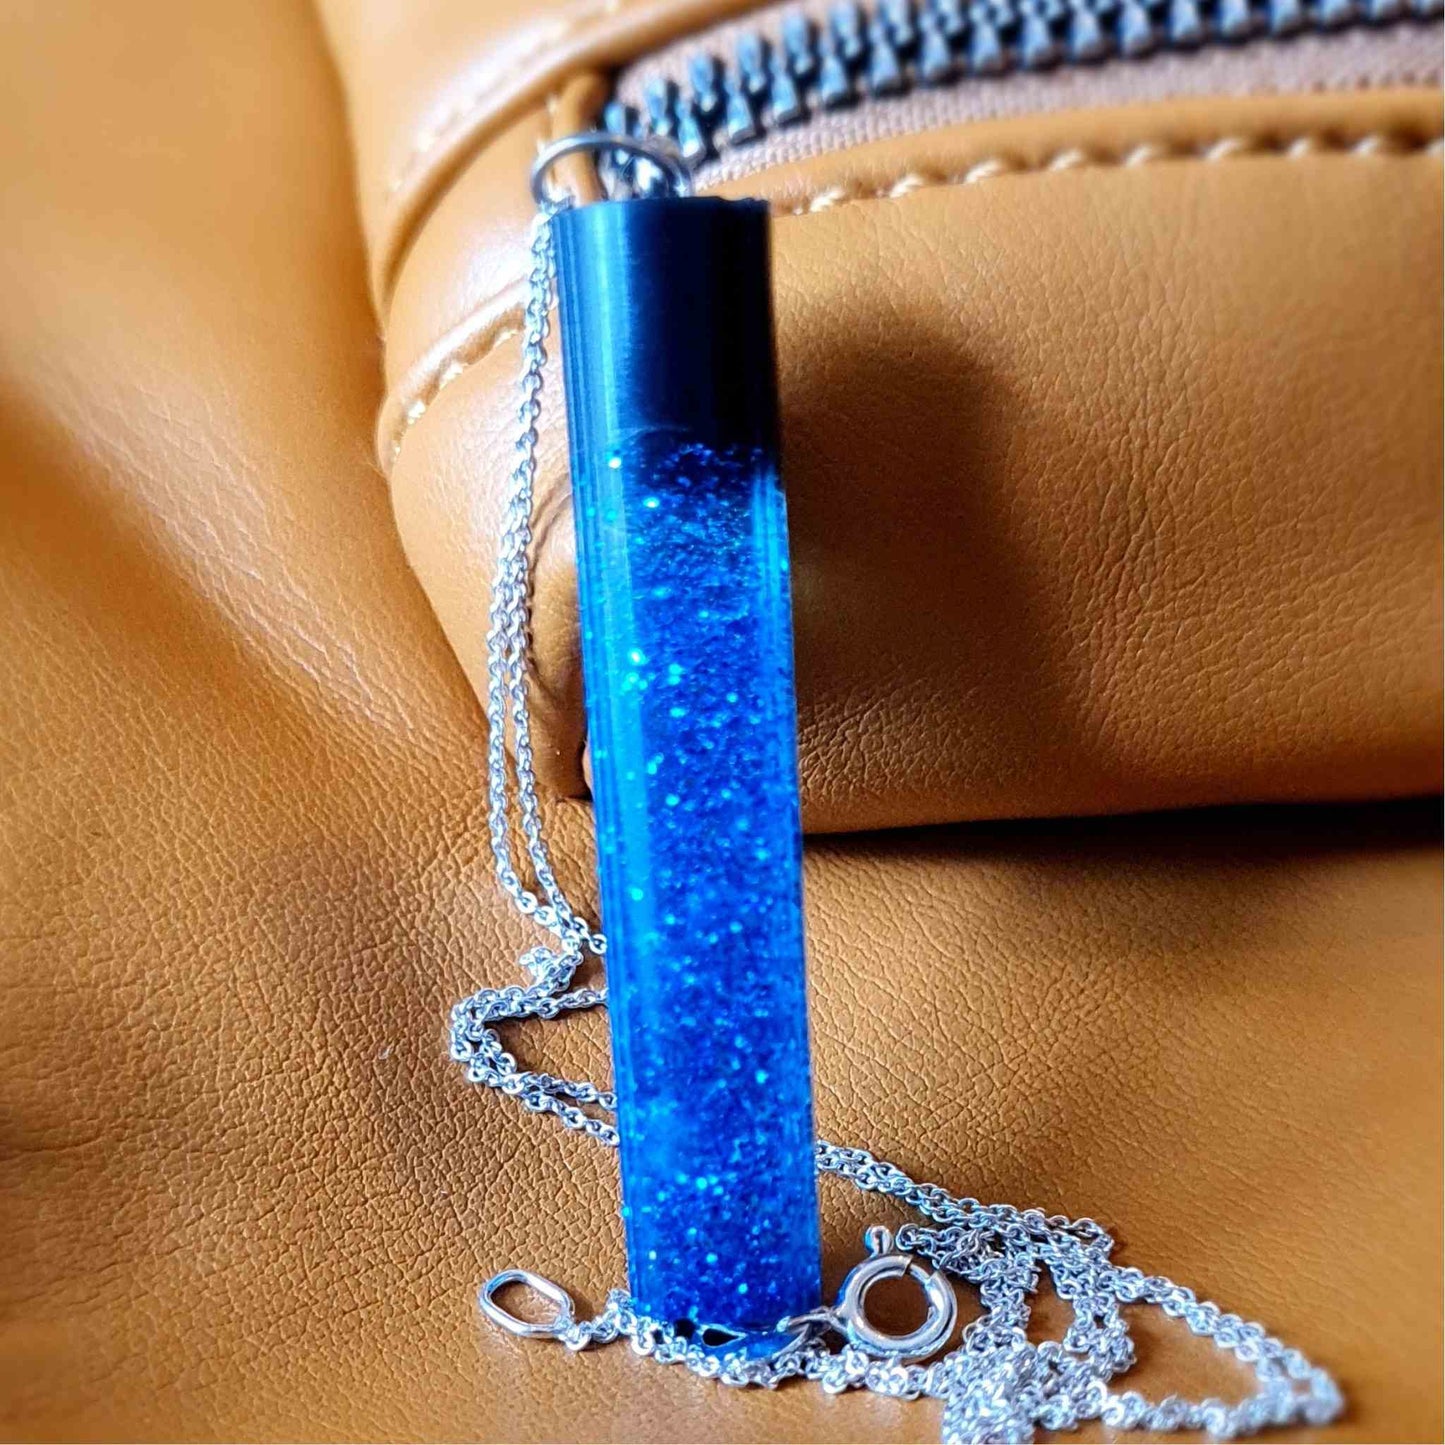 Pandantiv cilindric cu rasina epoxidica si sclipici, albastru, finisat manual de un artist handmade.